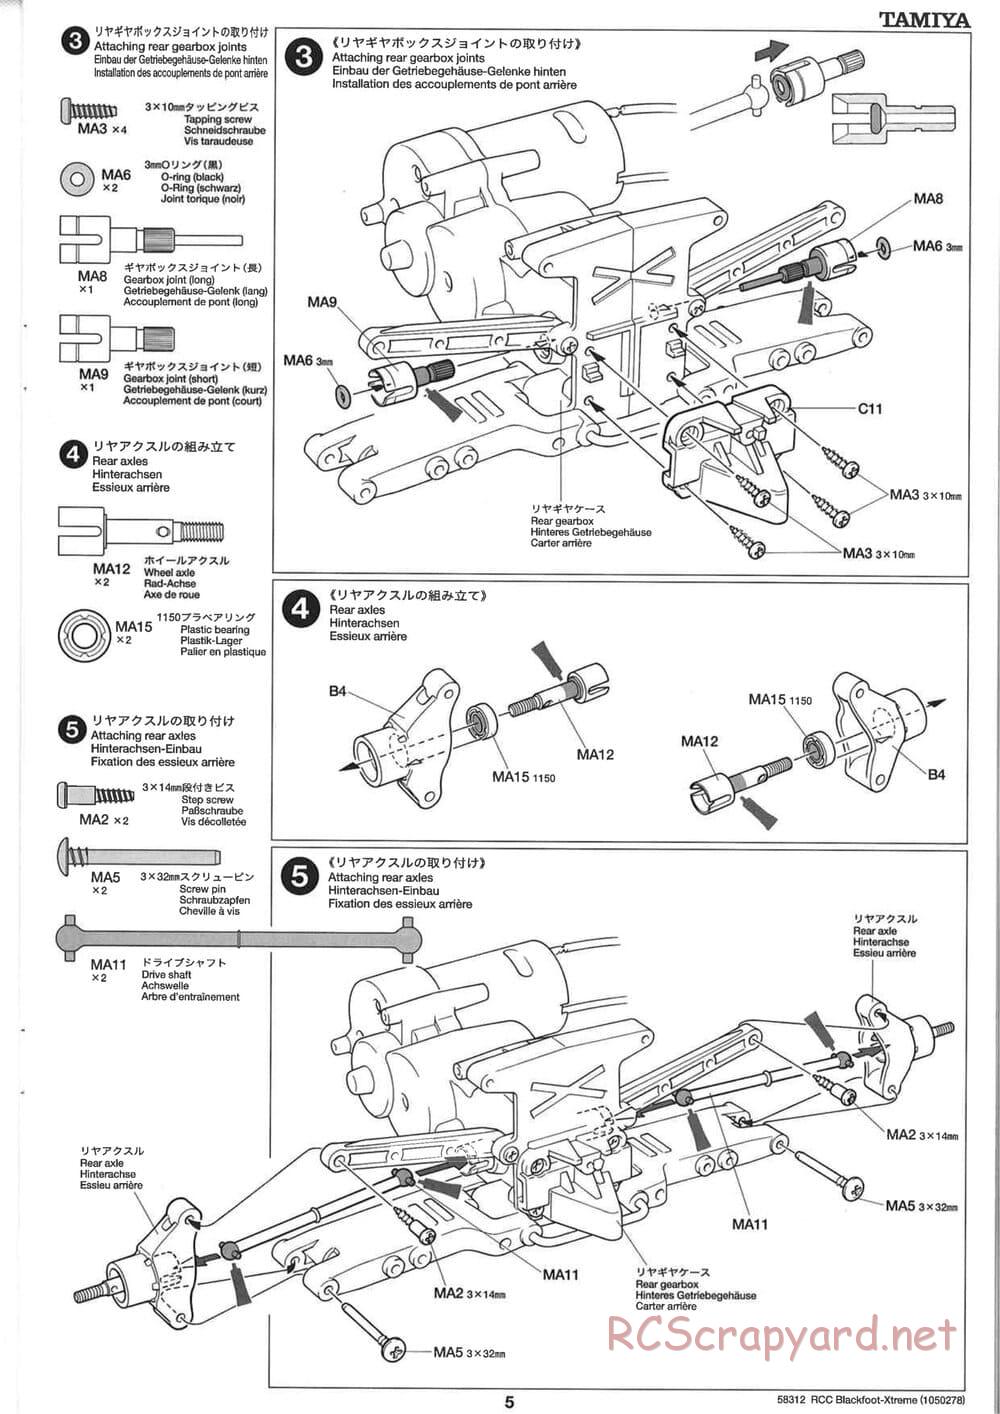 Tamiya - Blackfoot Xtreme - WT-01 Chassis - Manual - Page 5